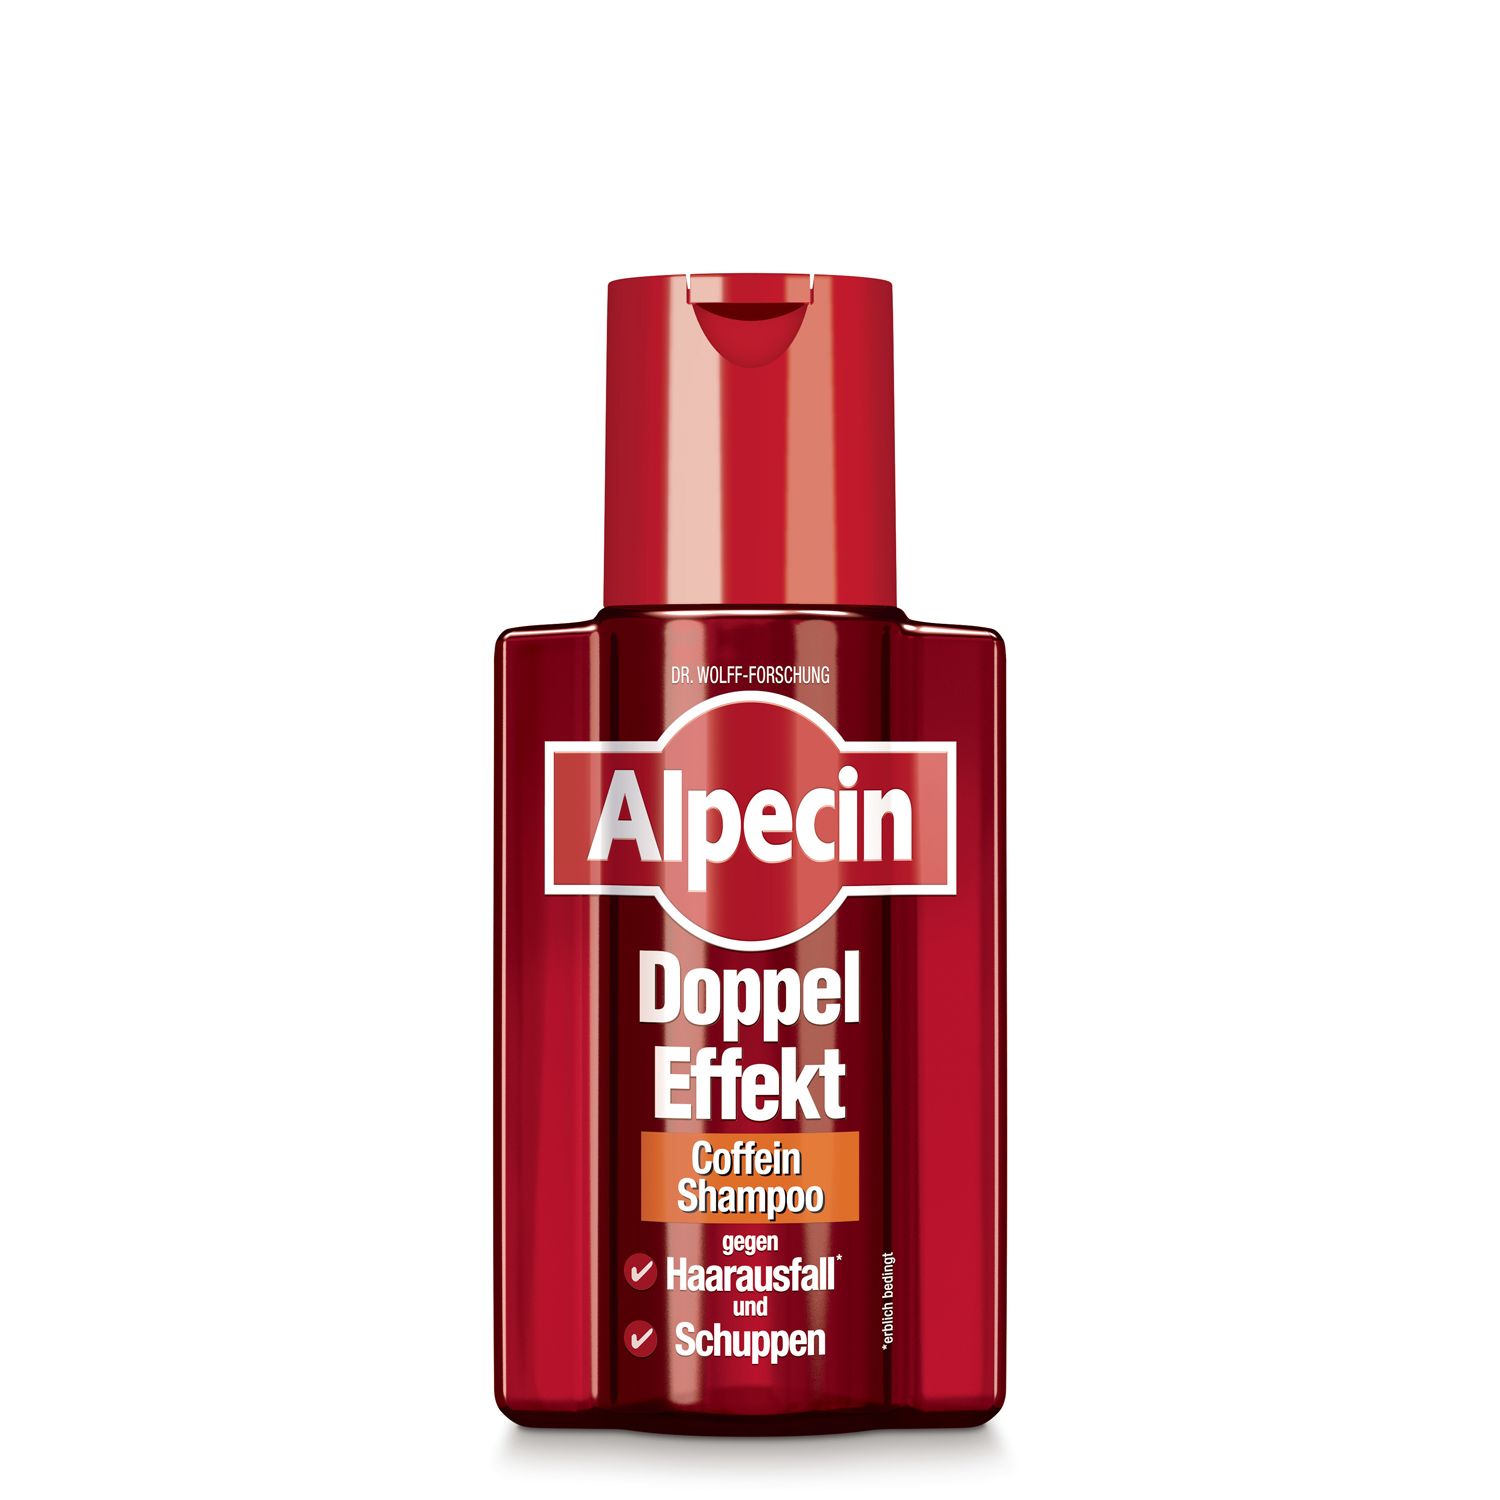 Image of Alpecin Doppel-Effekt Shampoo